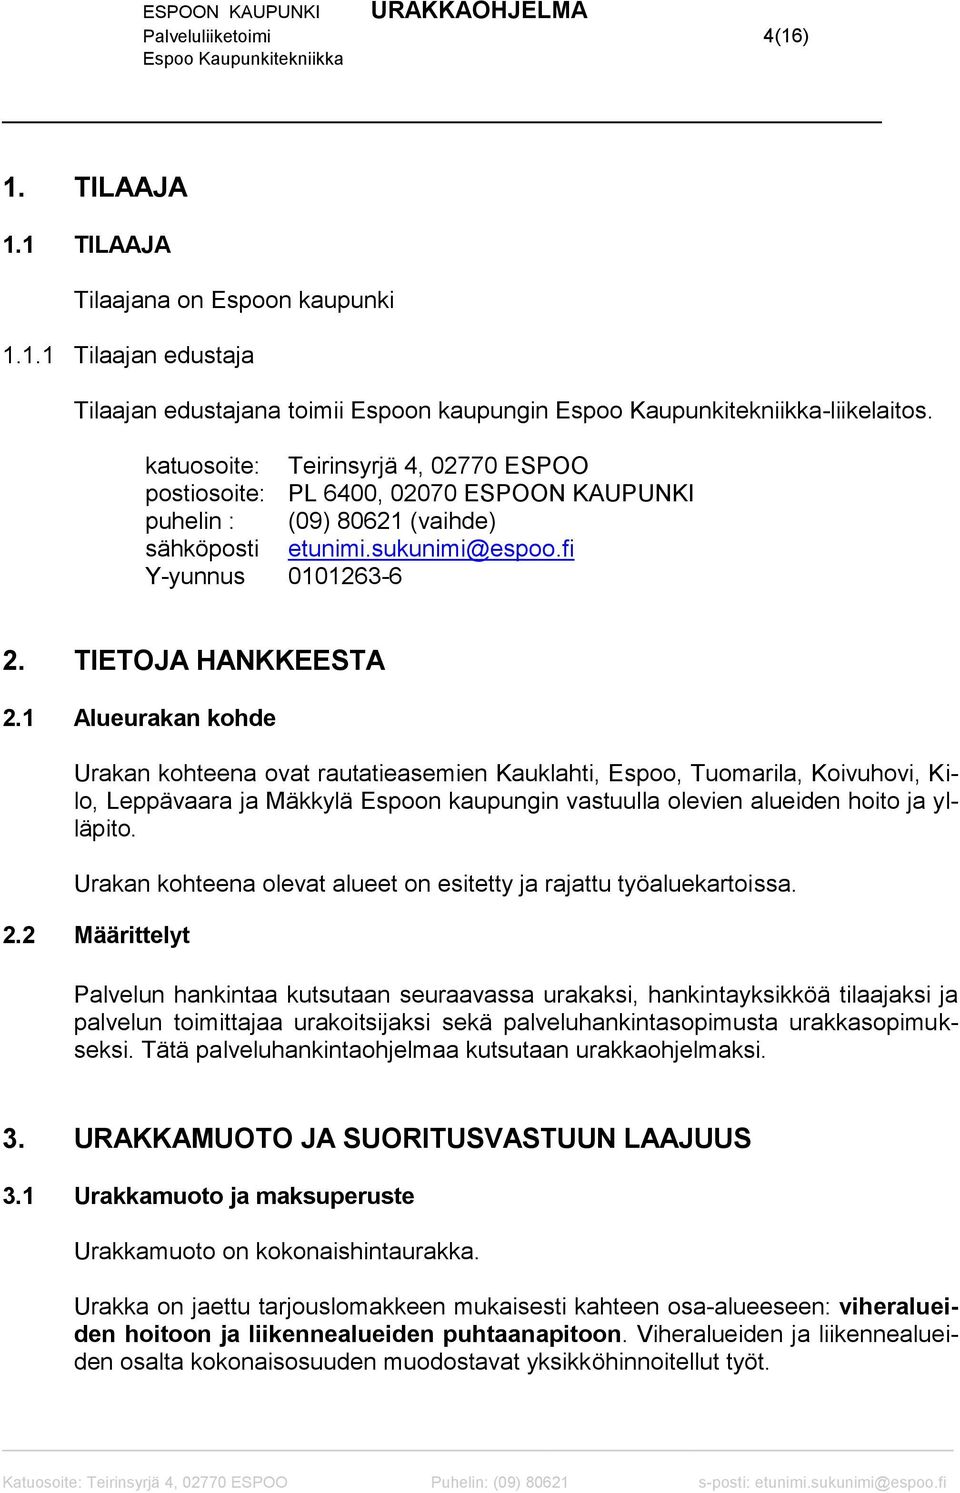 1 Alueurakan kohde Urakan kohteena ovat rautatieasemien Kauklahti, Espoo, Tuomarila, Koivuhovi, Kilo, Leppävaara ja Mäkkylä Espoon kaupungin vastuulla olevien alueiden hoito ja ylläpito.